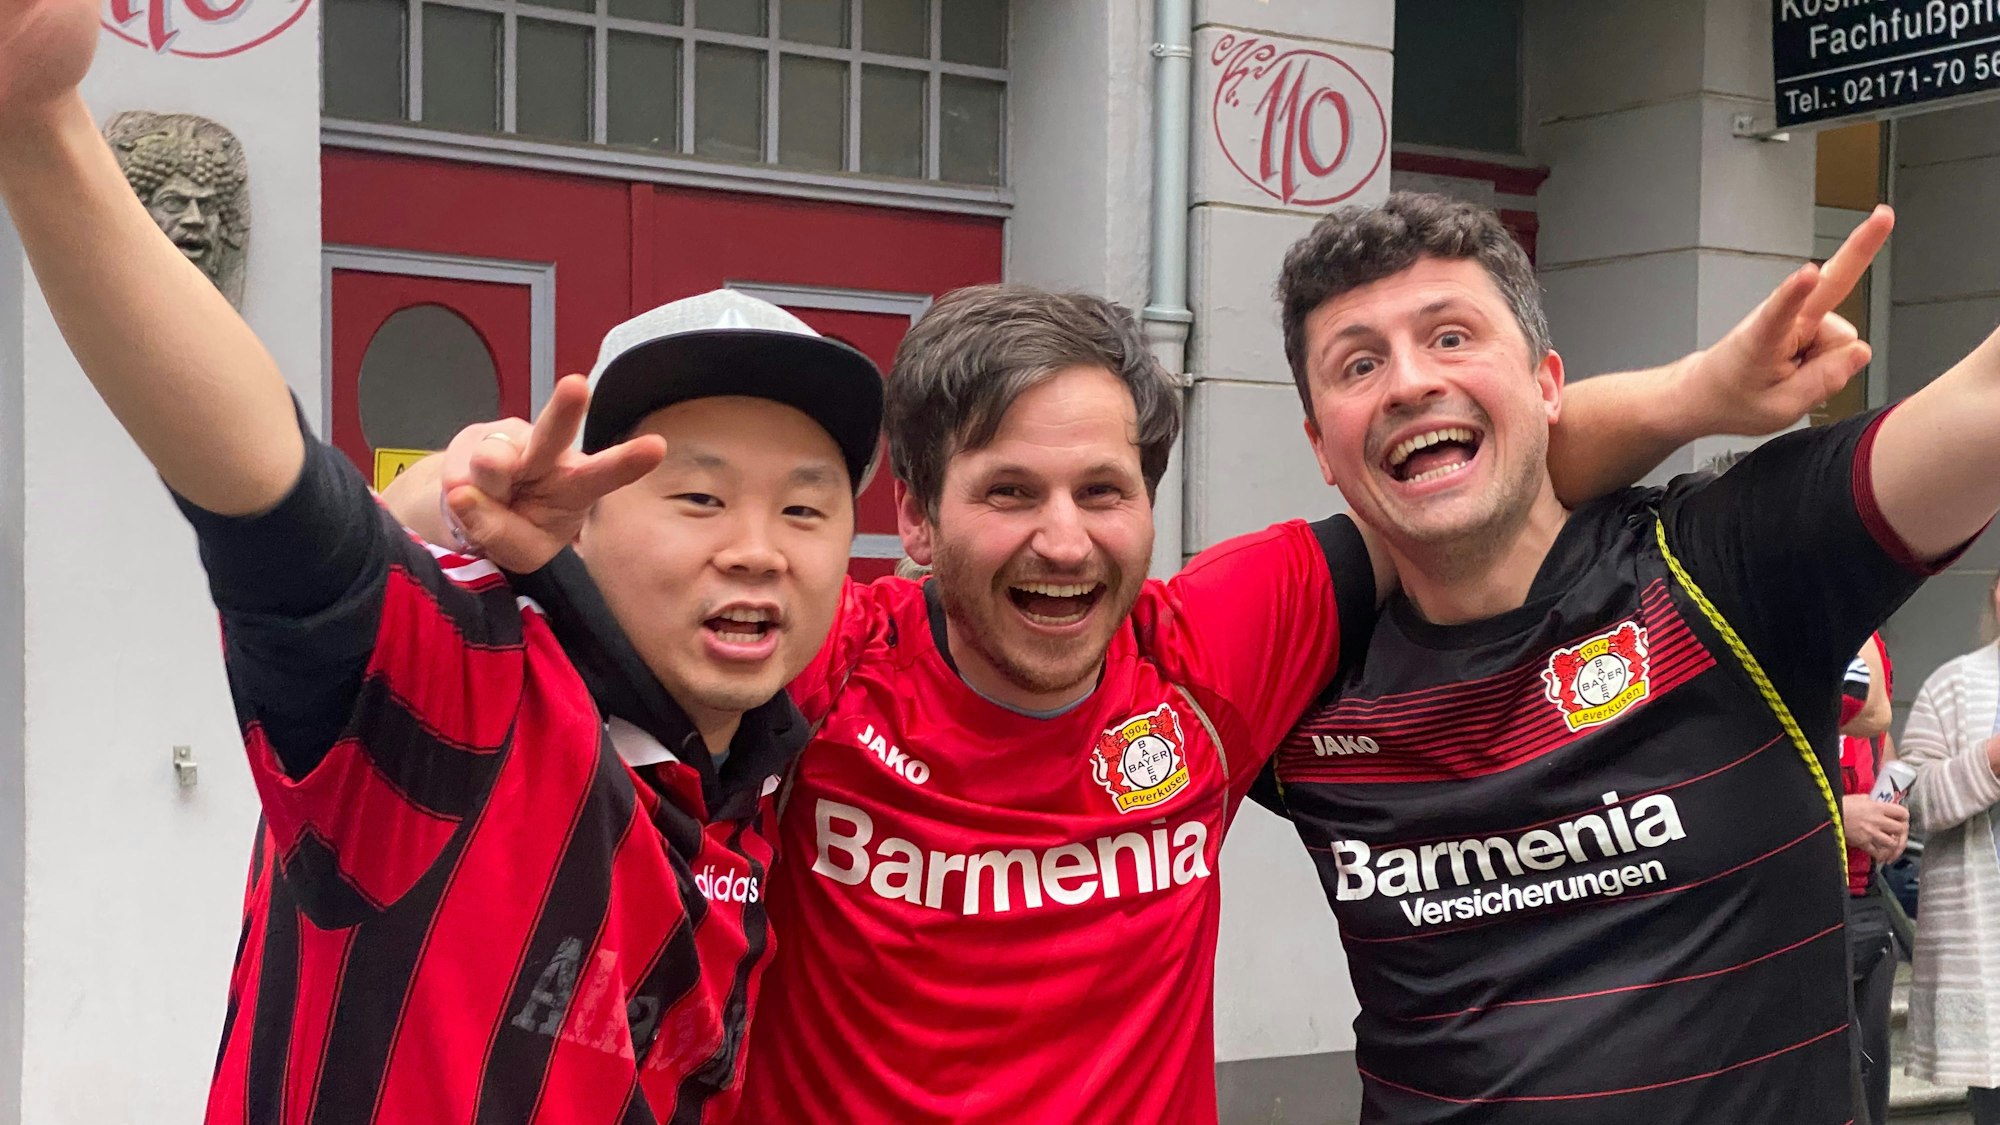 Die Bayer-Fans Benni, Vito und Fu bejubeln die Leverkusener Meisterschaft.